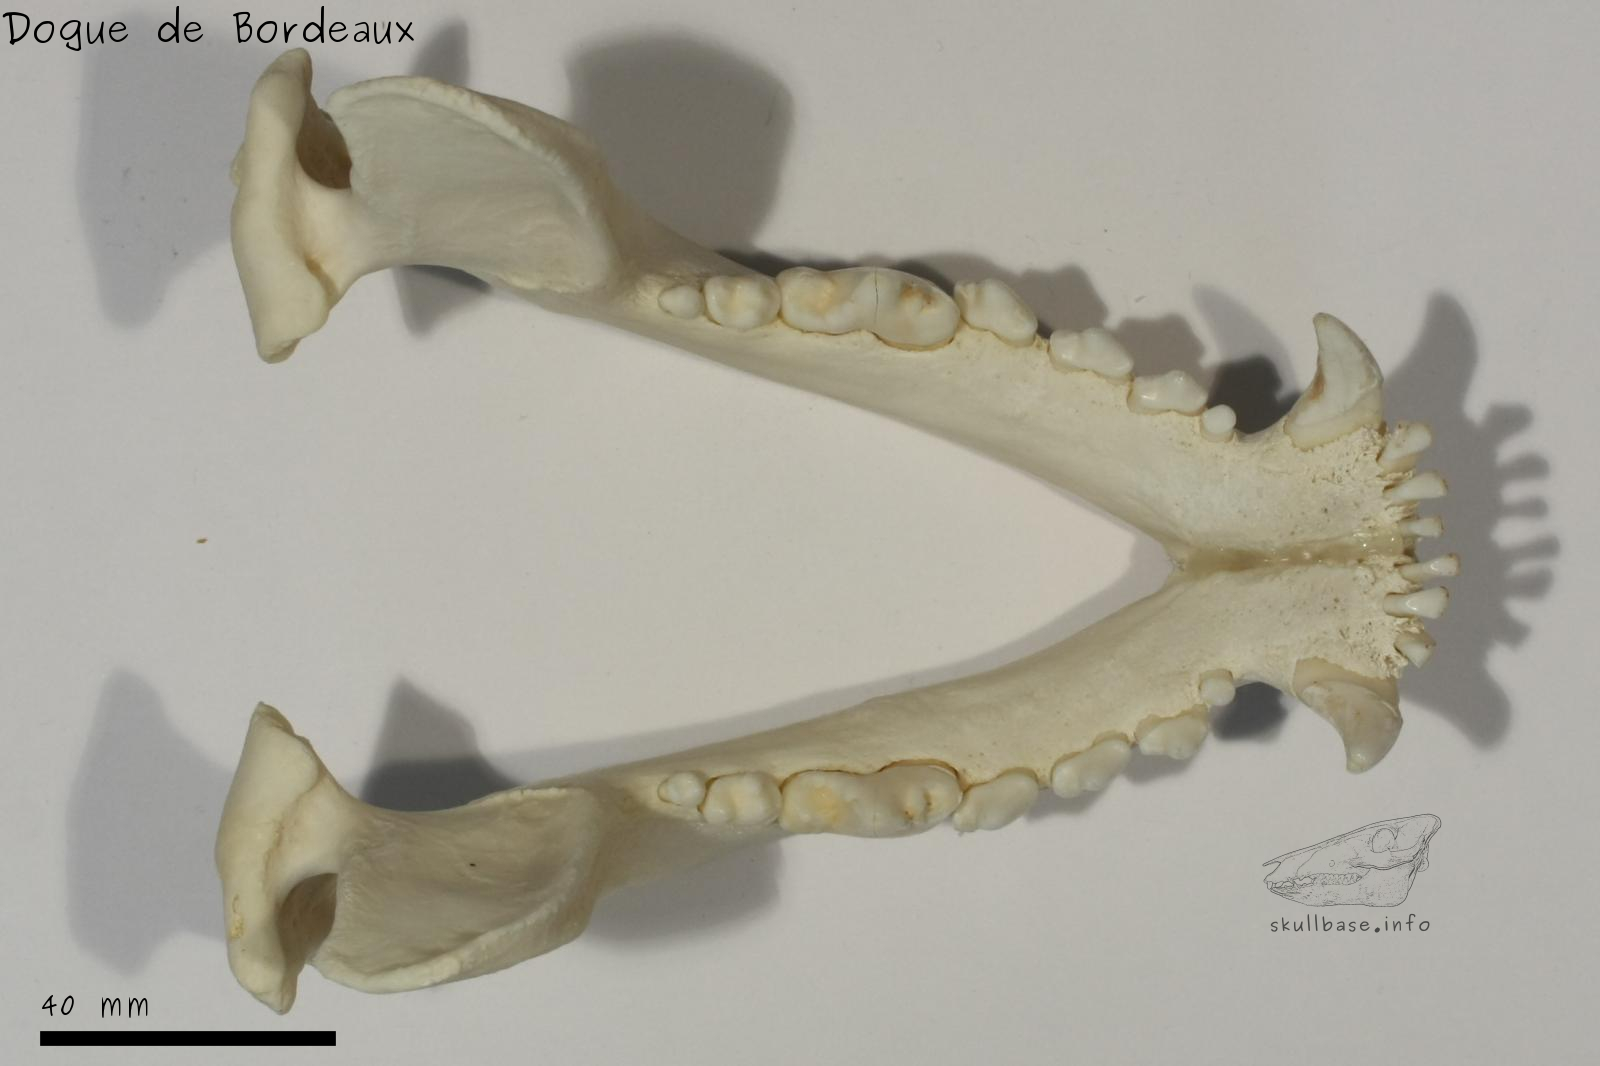 Dogue de Bordeaux (Canis lupus familiaris) jaw